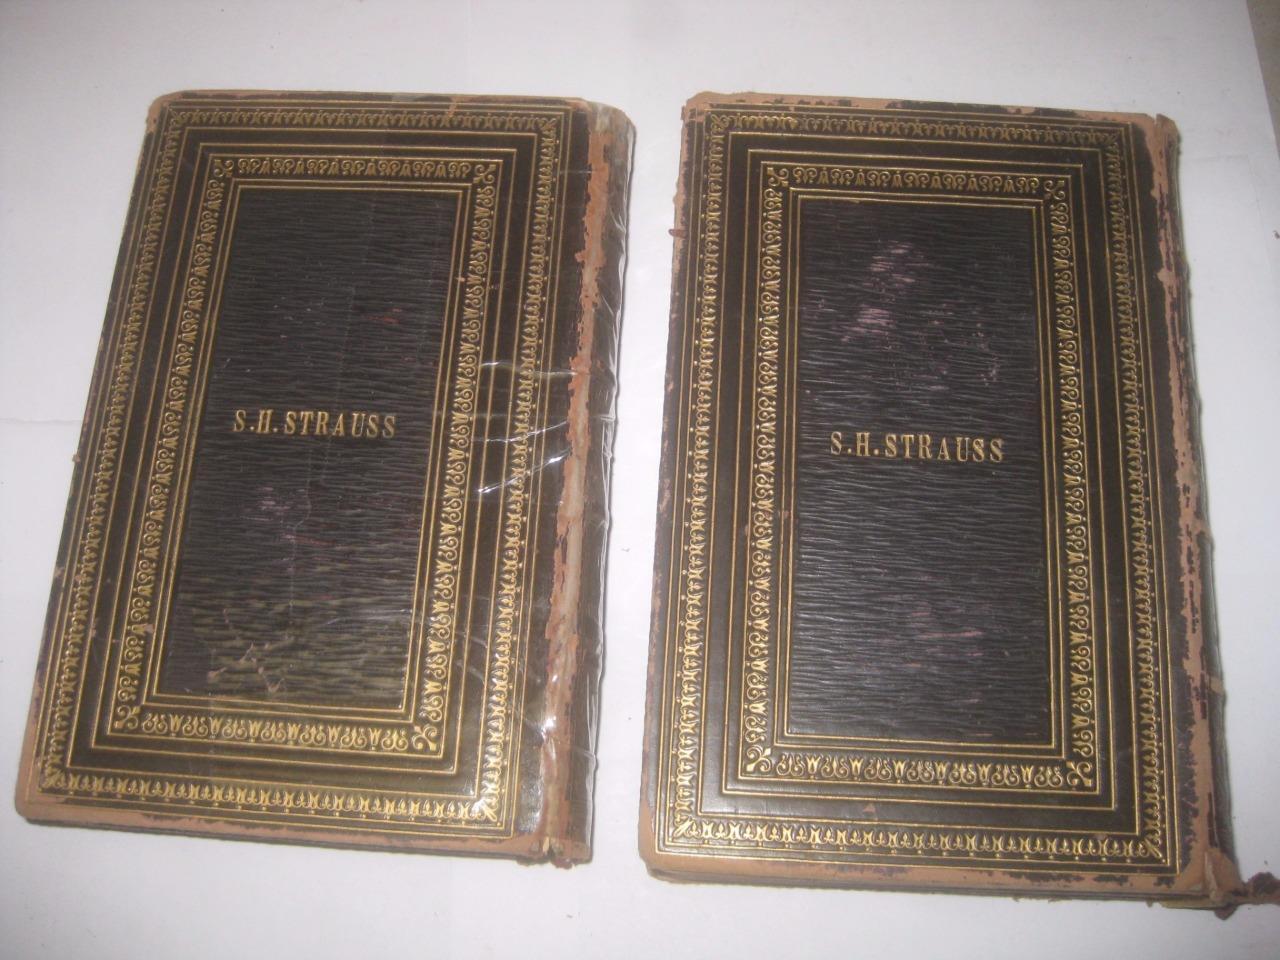 1860 London 2 volume set DE SOLA HEBREW-ENGLISH MACHZOR ROSH HASHANAH & KIPPUR